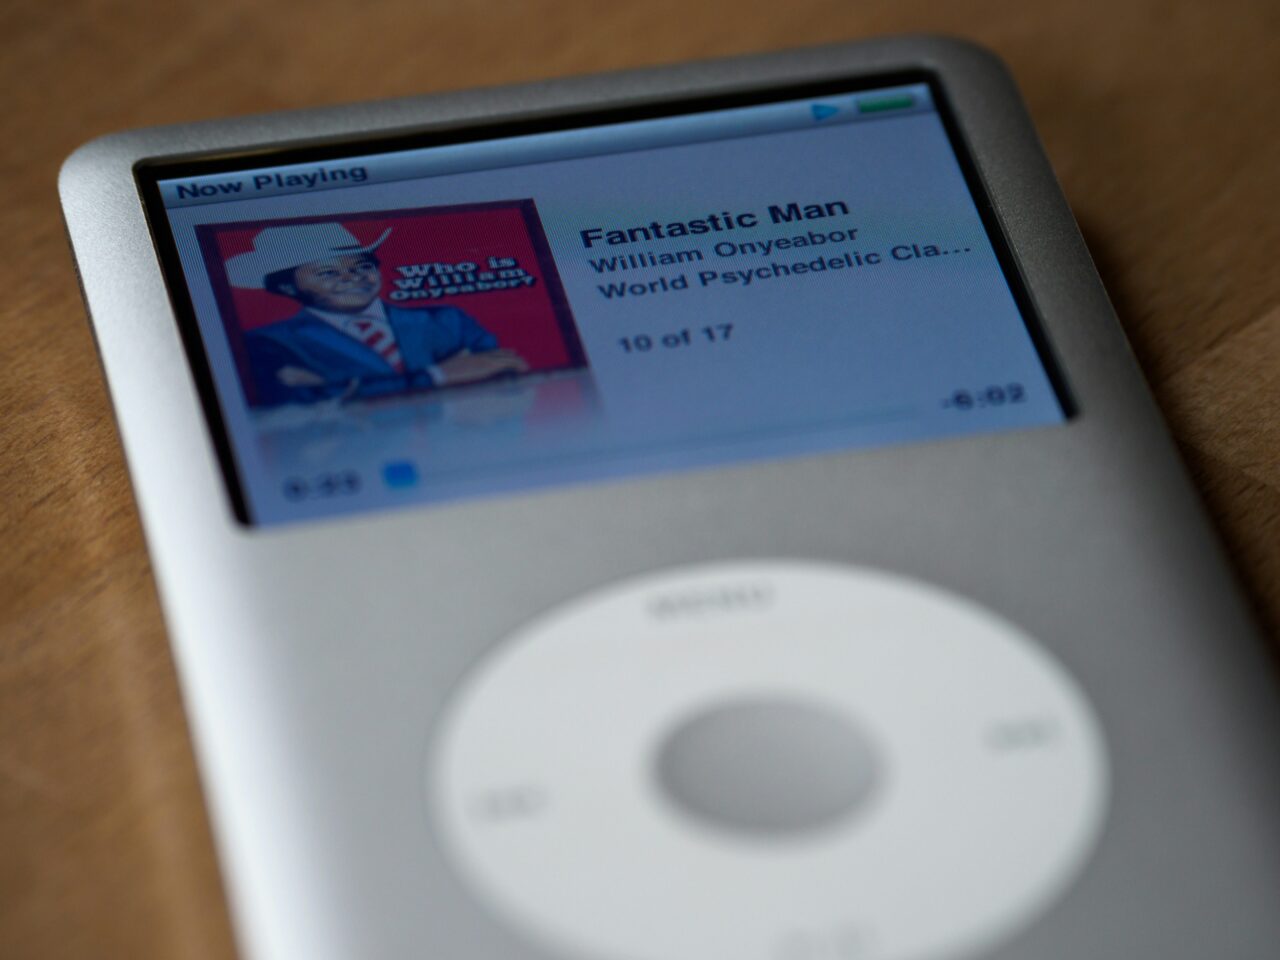 Odtwarzacz MP3 z ekranem wyświetlającym utwór "Fantastic Man" Williama Onyeabora.